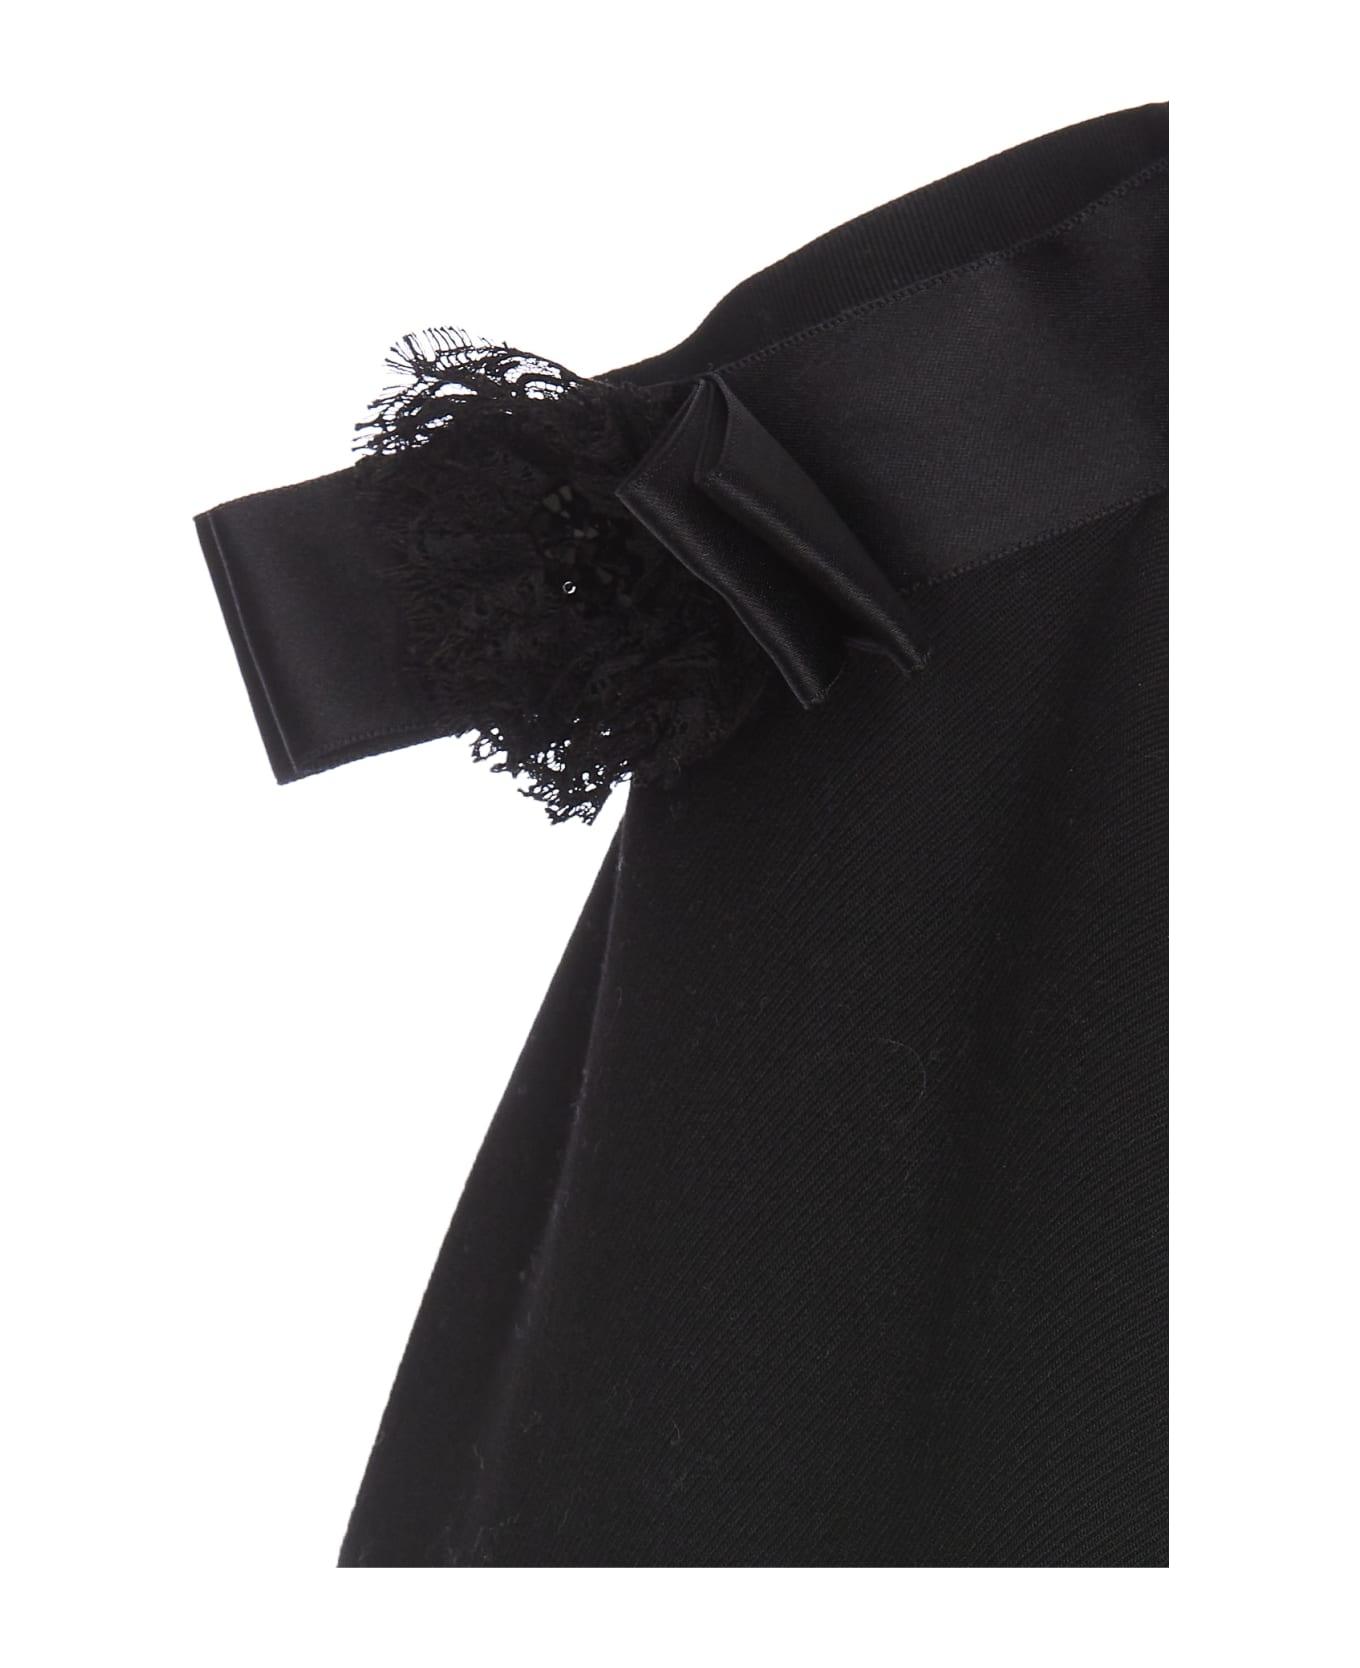 Dolce & Gabbana Short Woolen Dress With Rear Neckline - Black